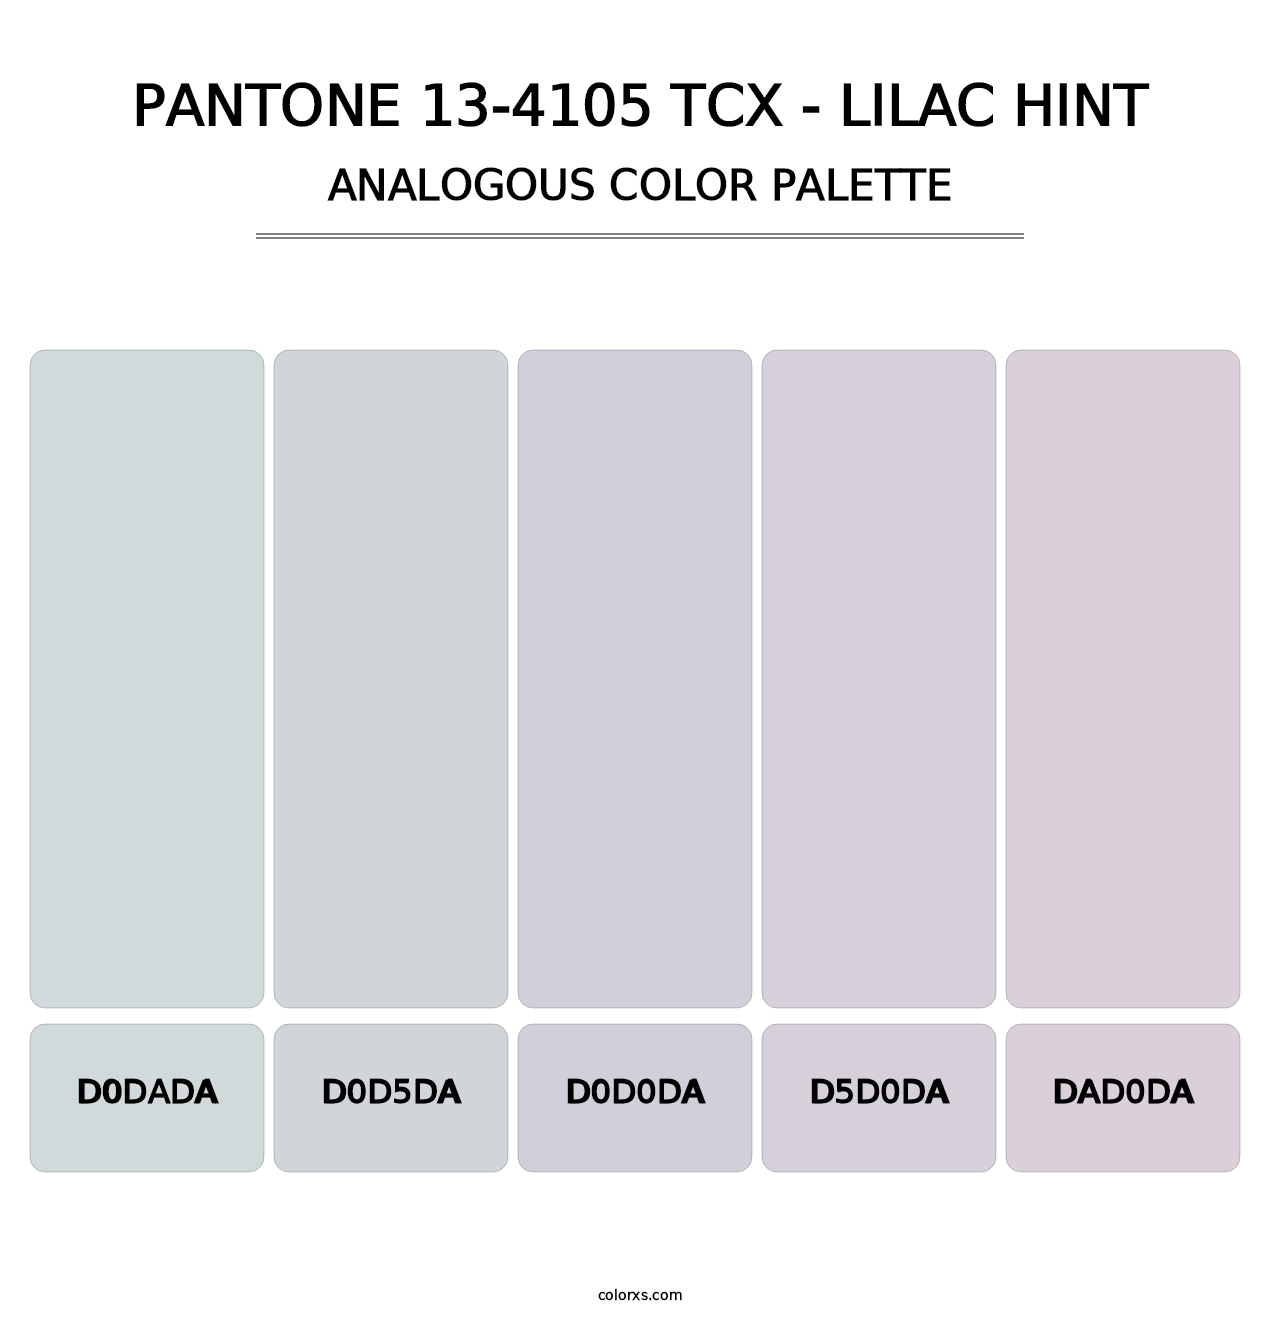 PANTONE 13-4105 TCX - Lilac Hint - Analogous Color Palette